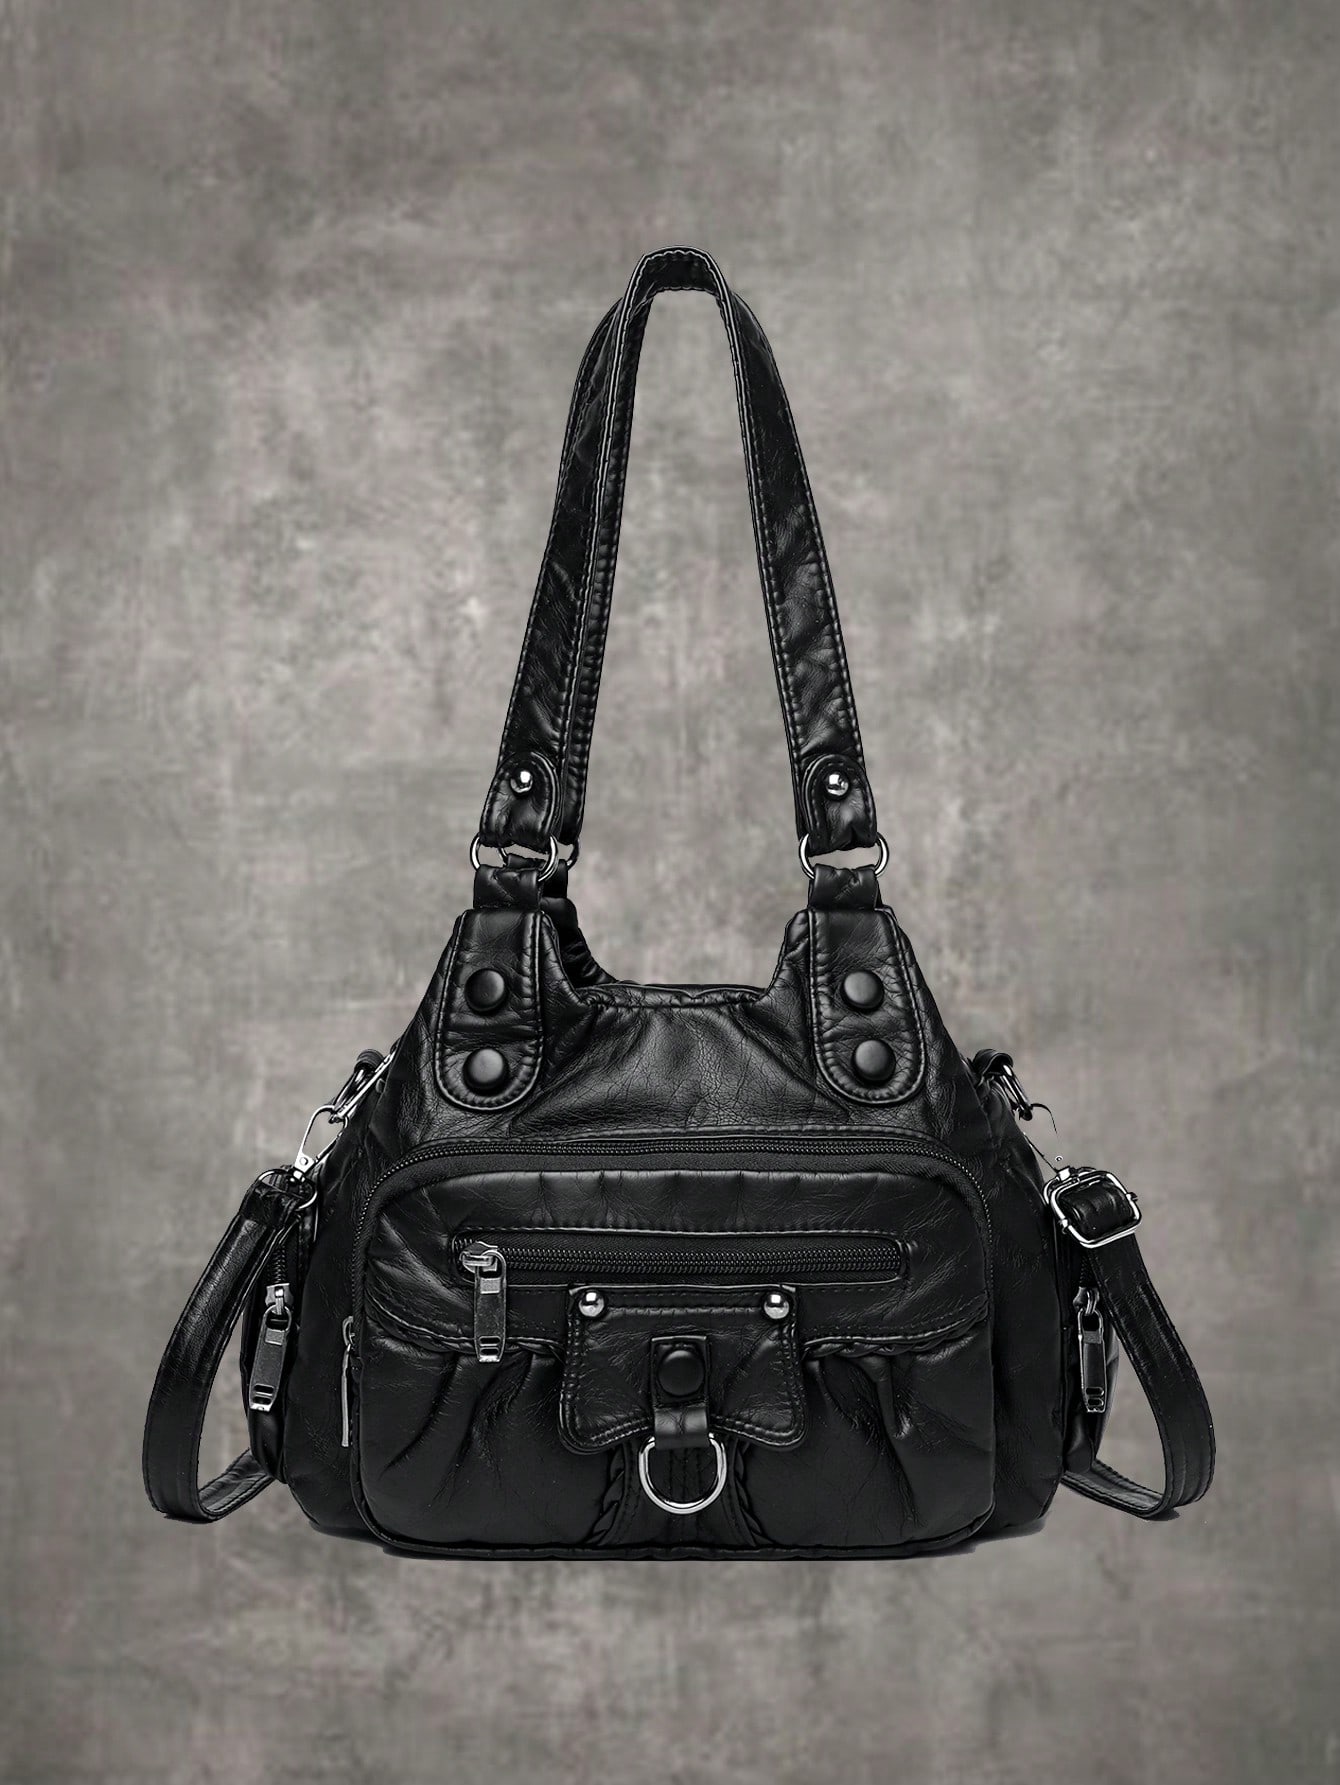 ROMWE Grunge Punk Средняя сумка на плечо в стиле панк Минималистичный дизайн на молнии для работы, черный